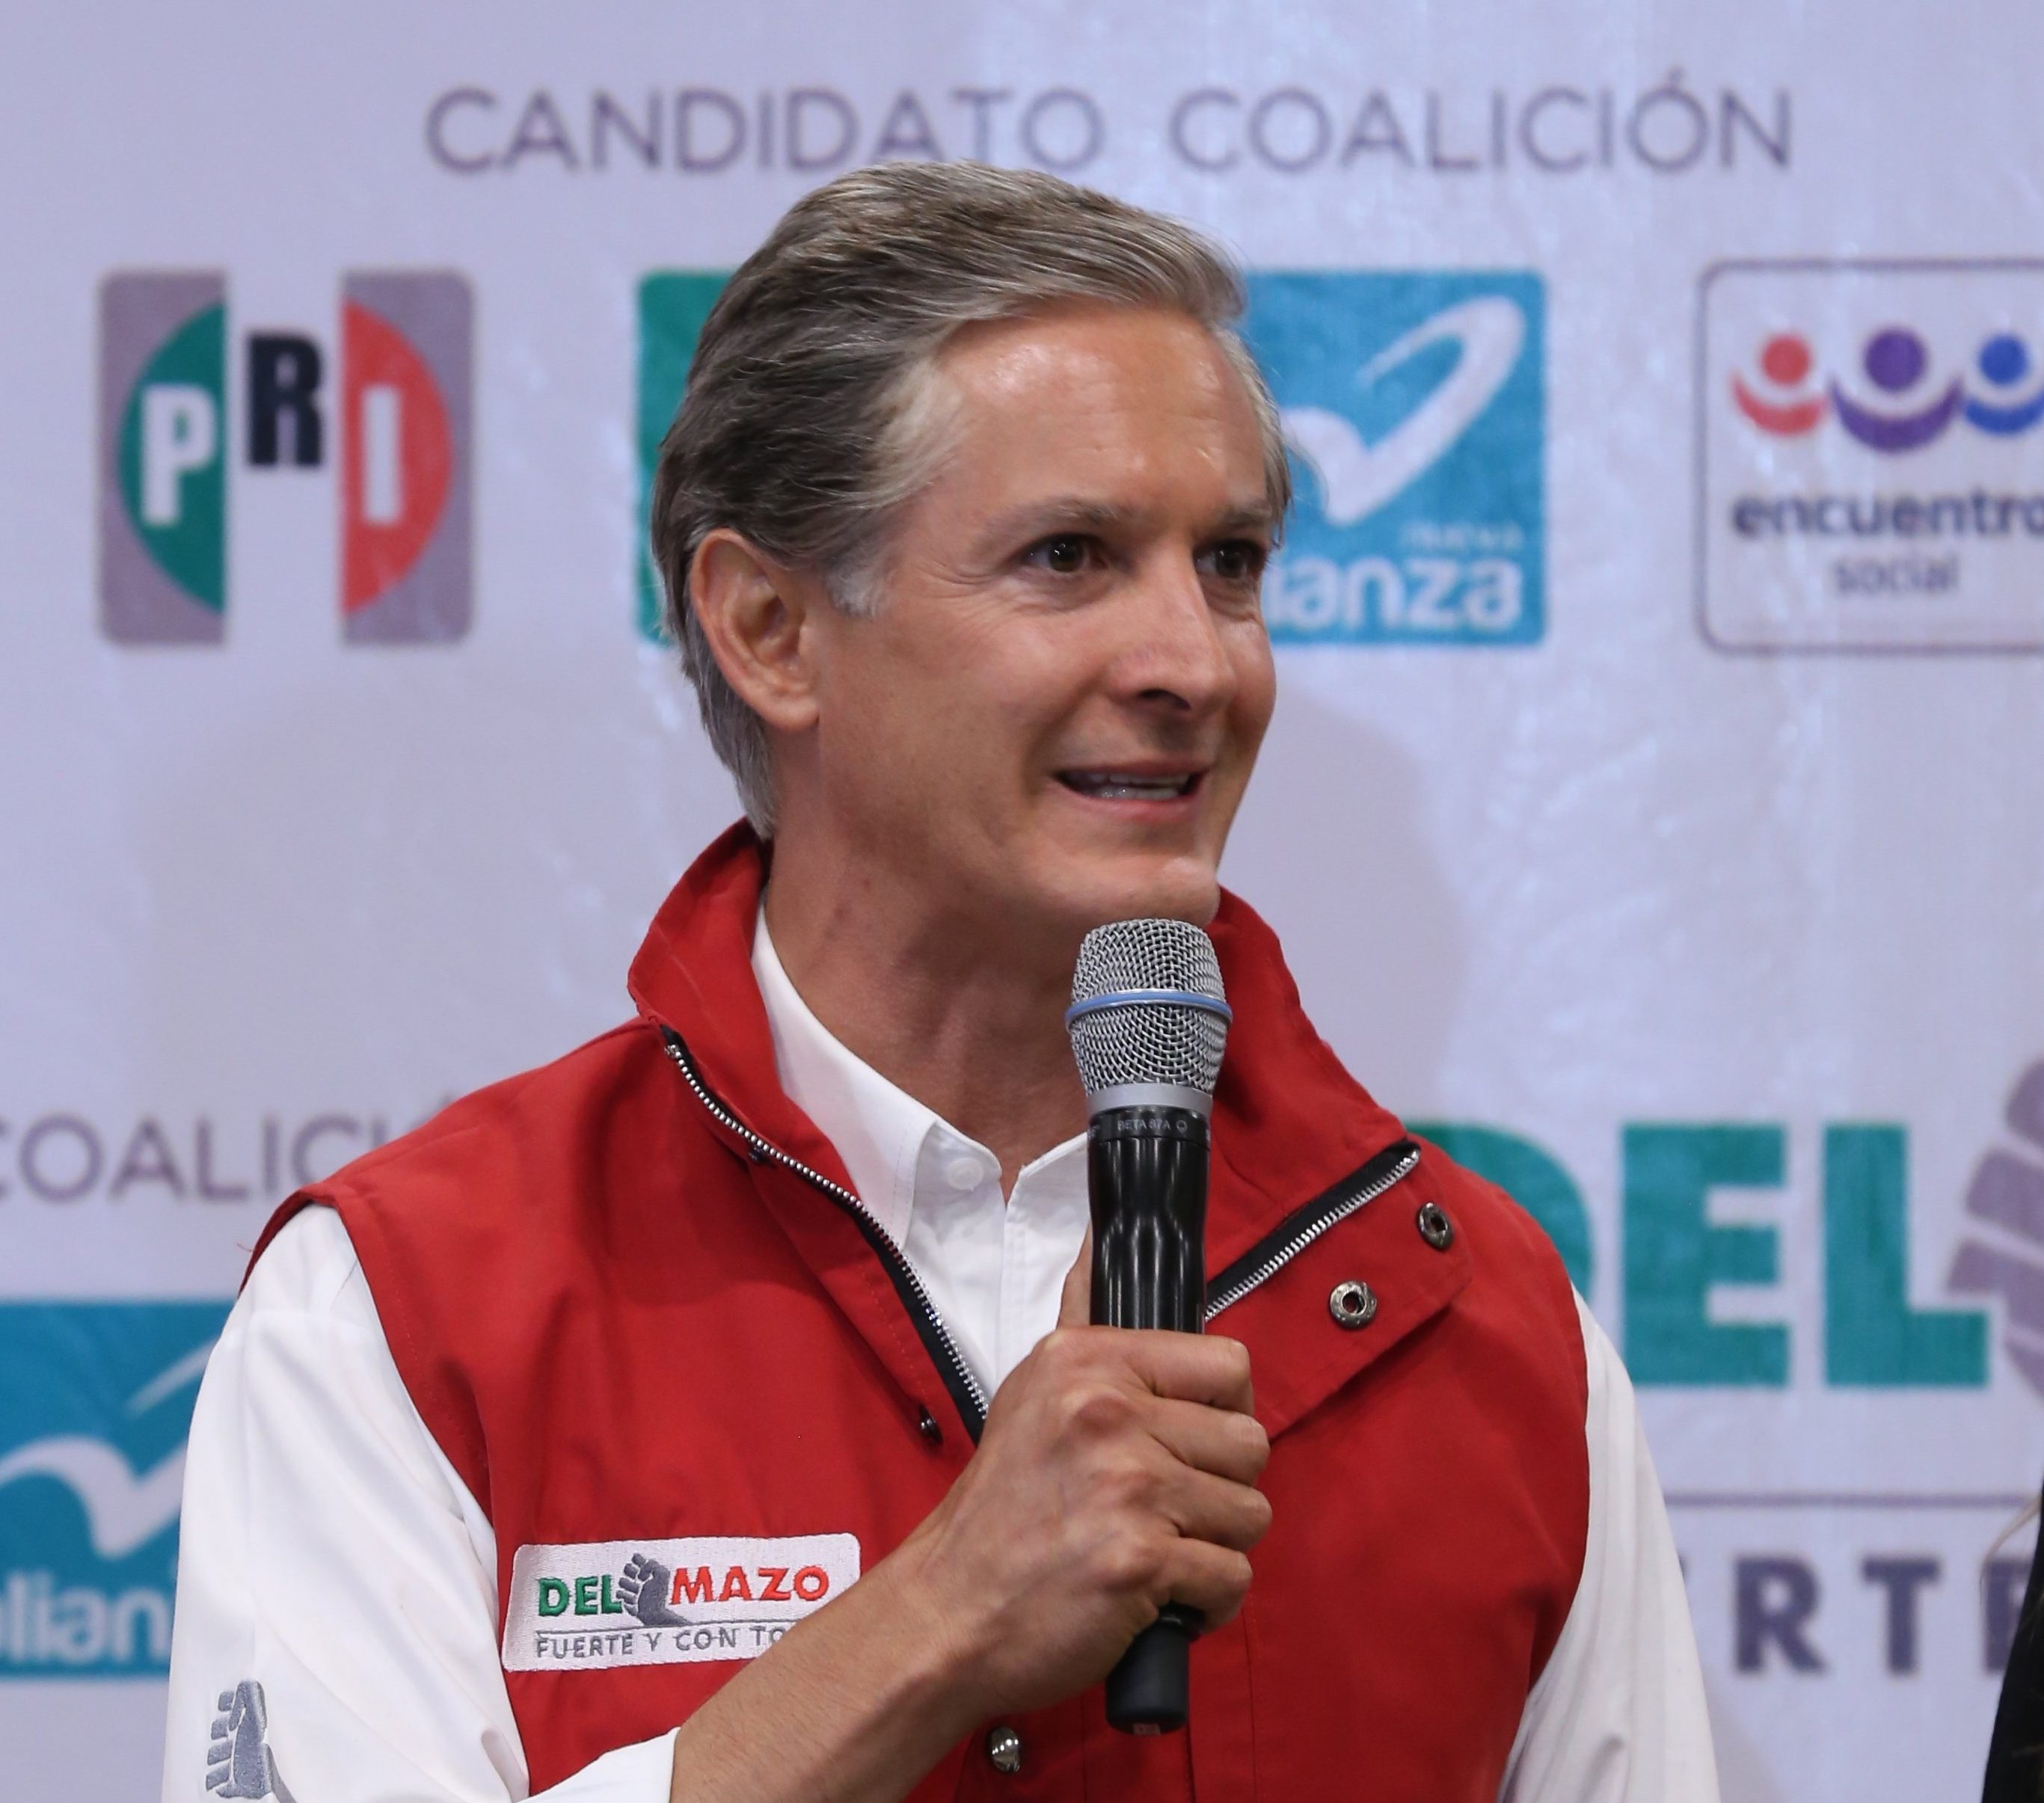  Candidato del PRI gana elecciones en Estado de México, según conteo rápido